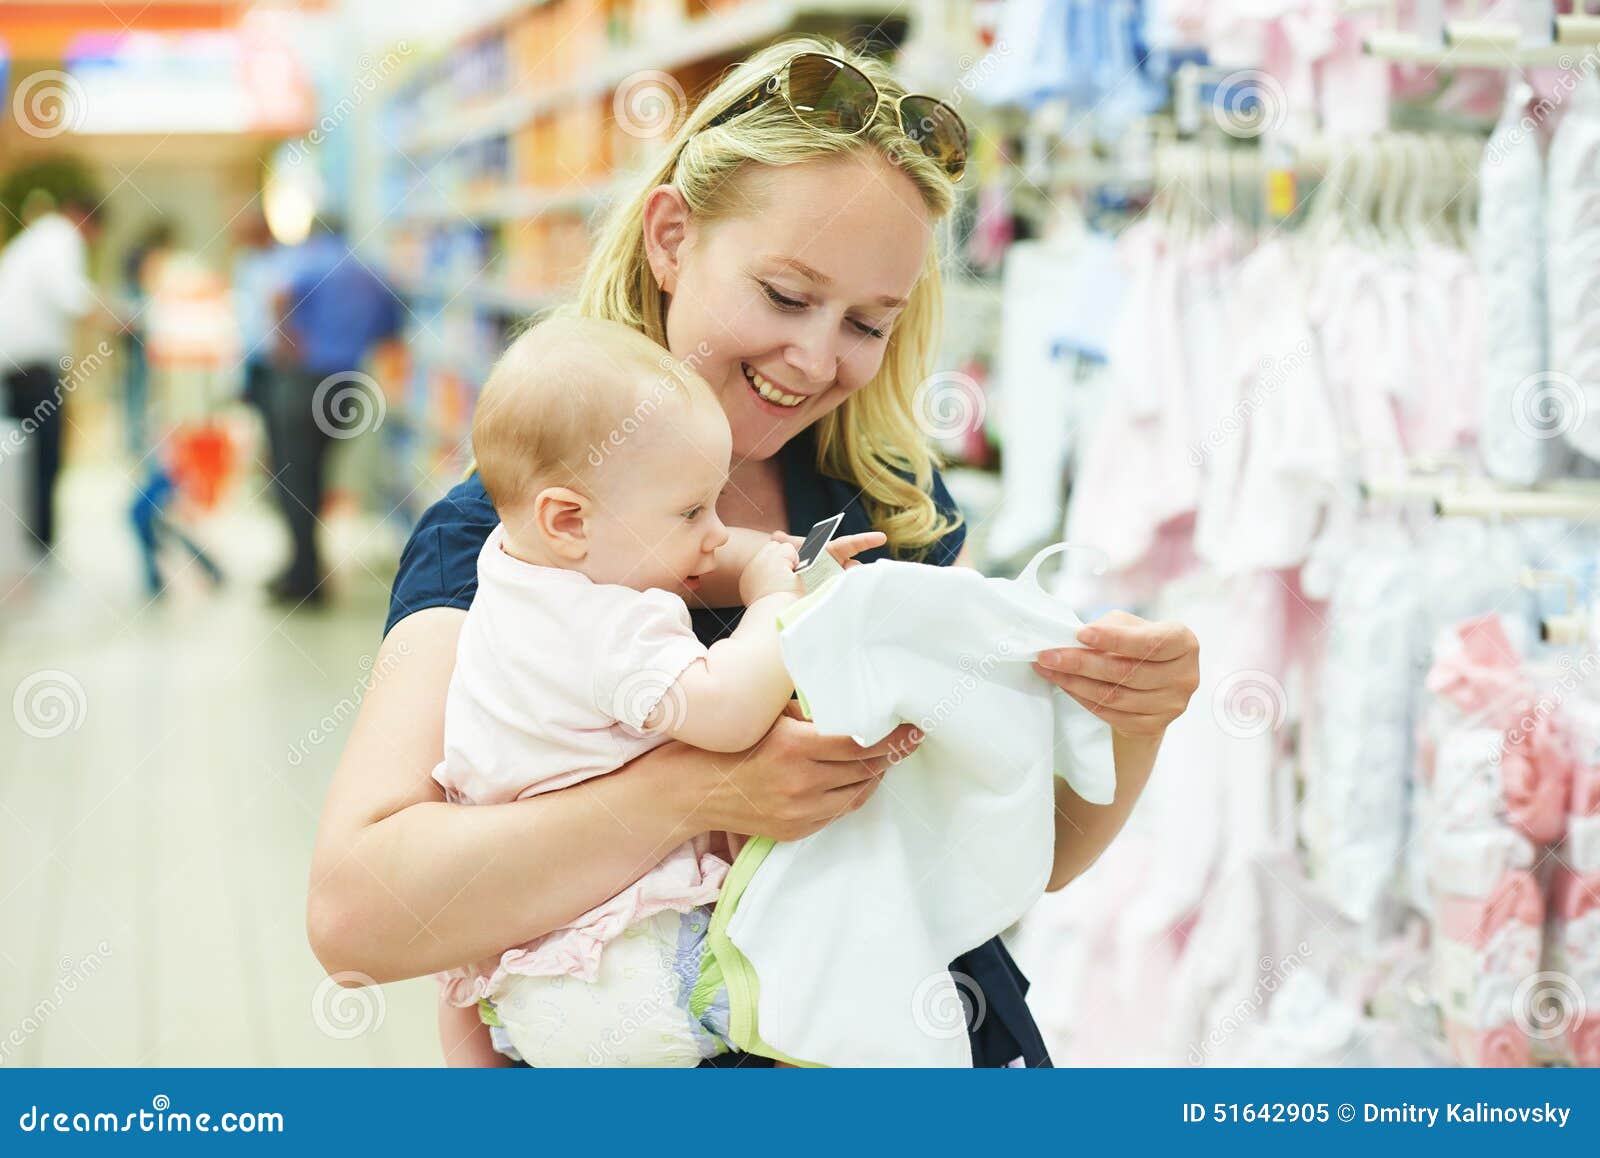 Mujer Con El Niño Del Bebé Tienda De Ropa de archivo - Imagen de venta, comprador: 51642905